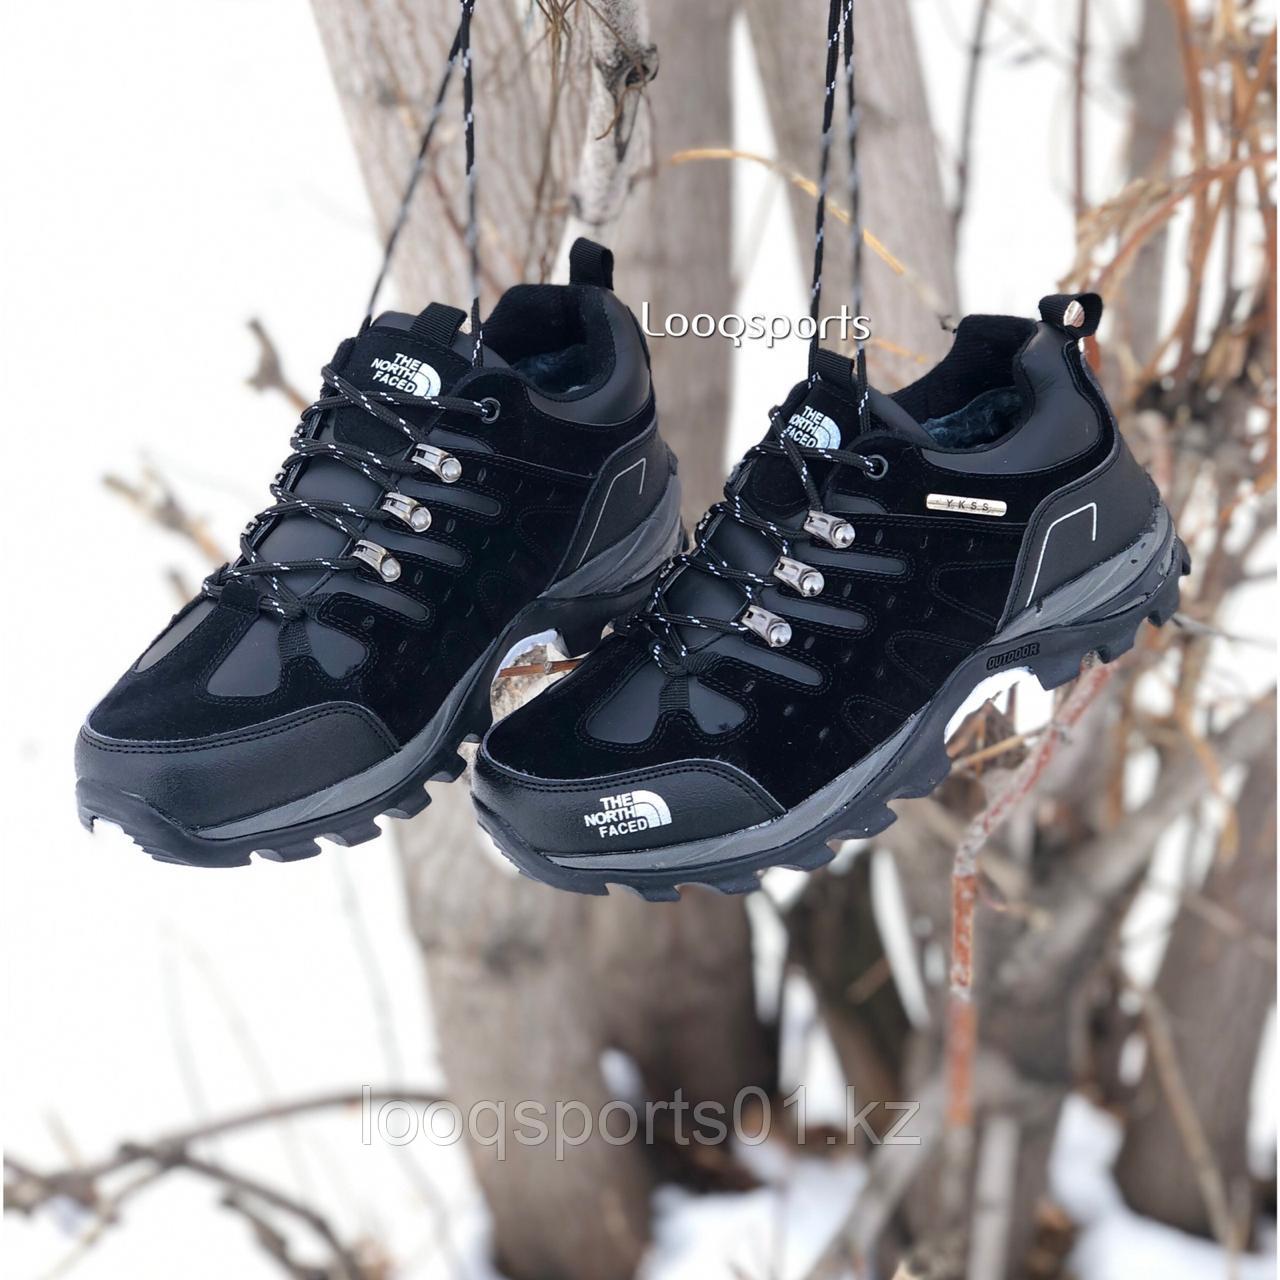 Ботинки мужские зимние обувь The North Face с бесплатной доставкой